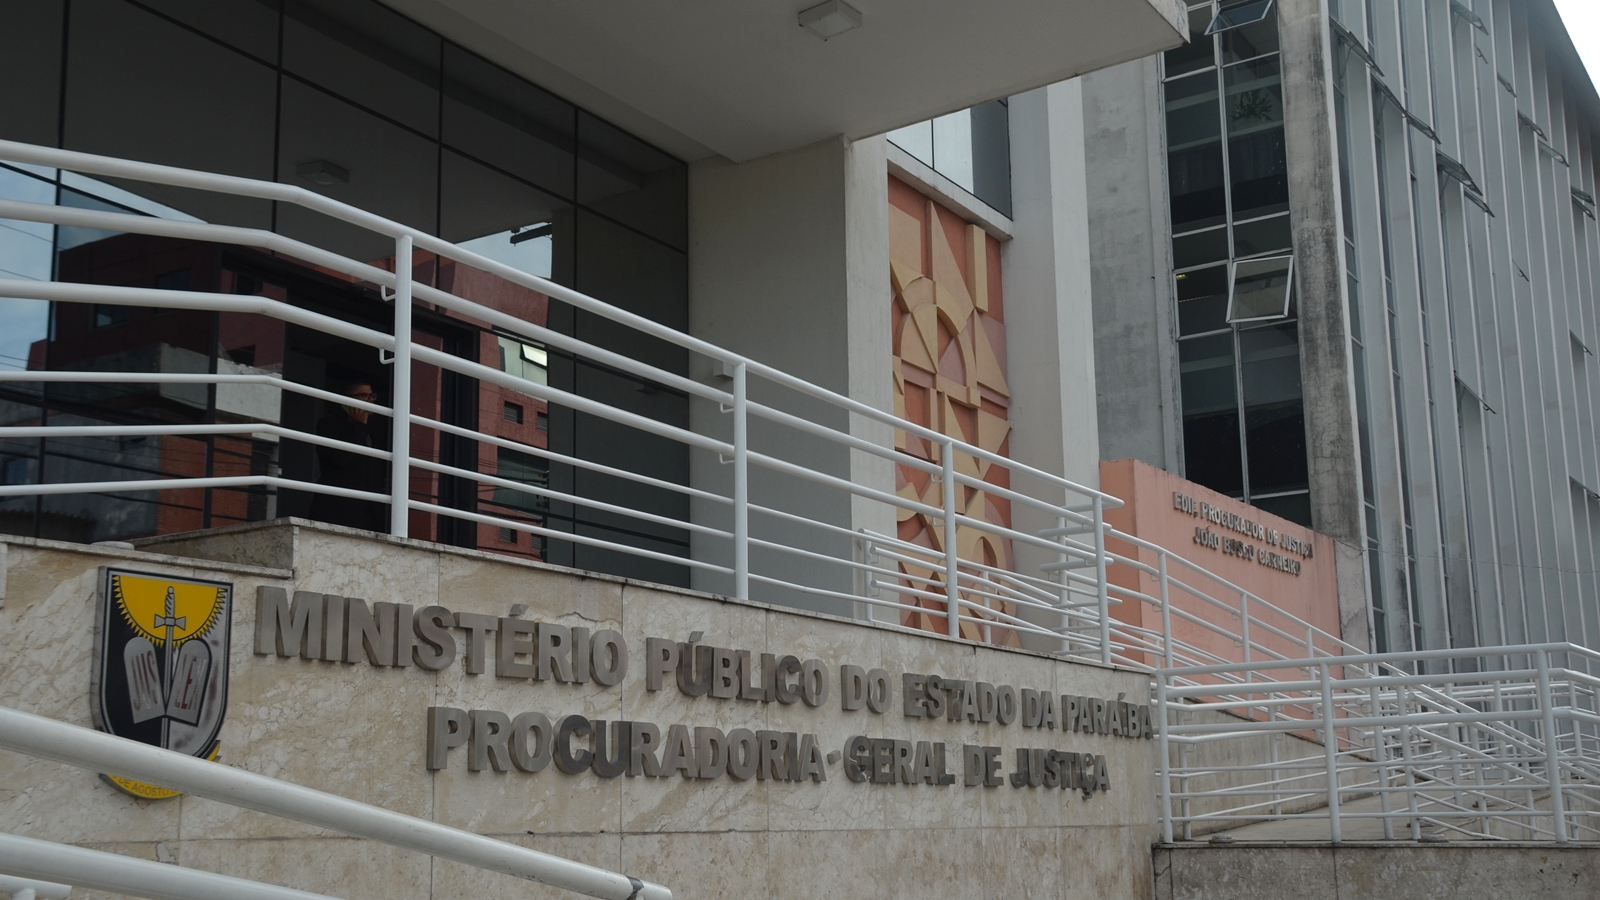 Ministério Público da Paraíba (MPPB) - Procuradoria-Geral de Justiça